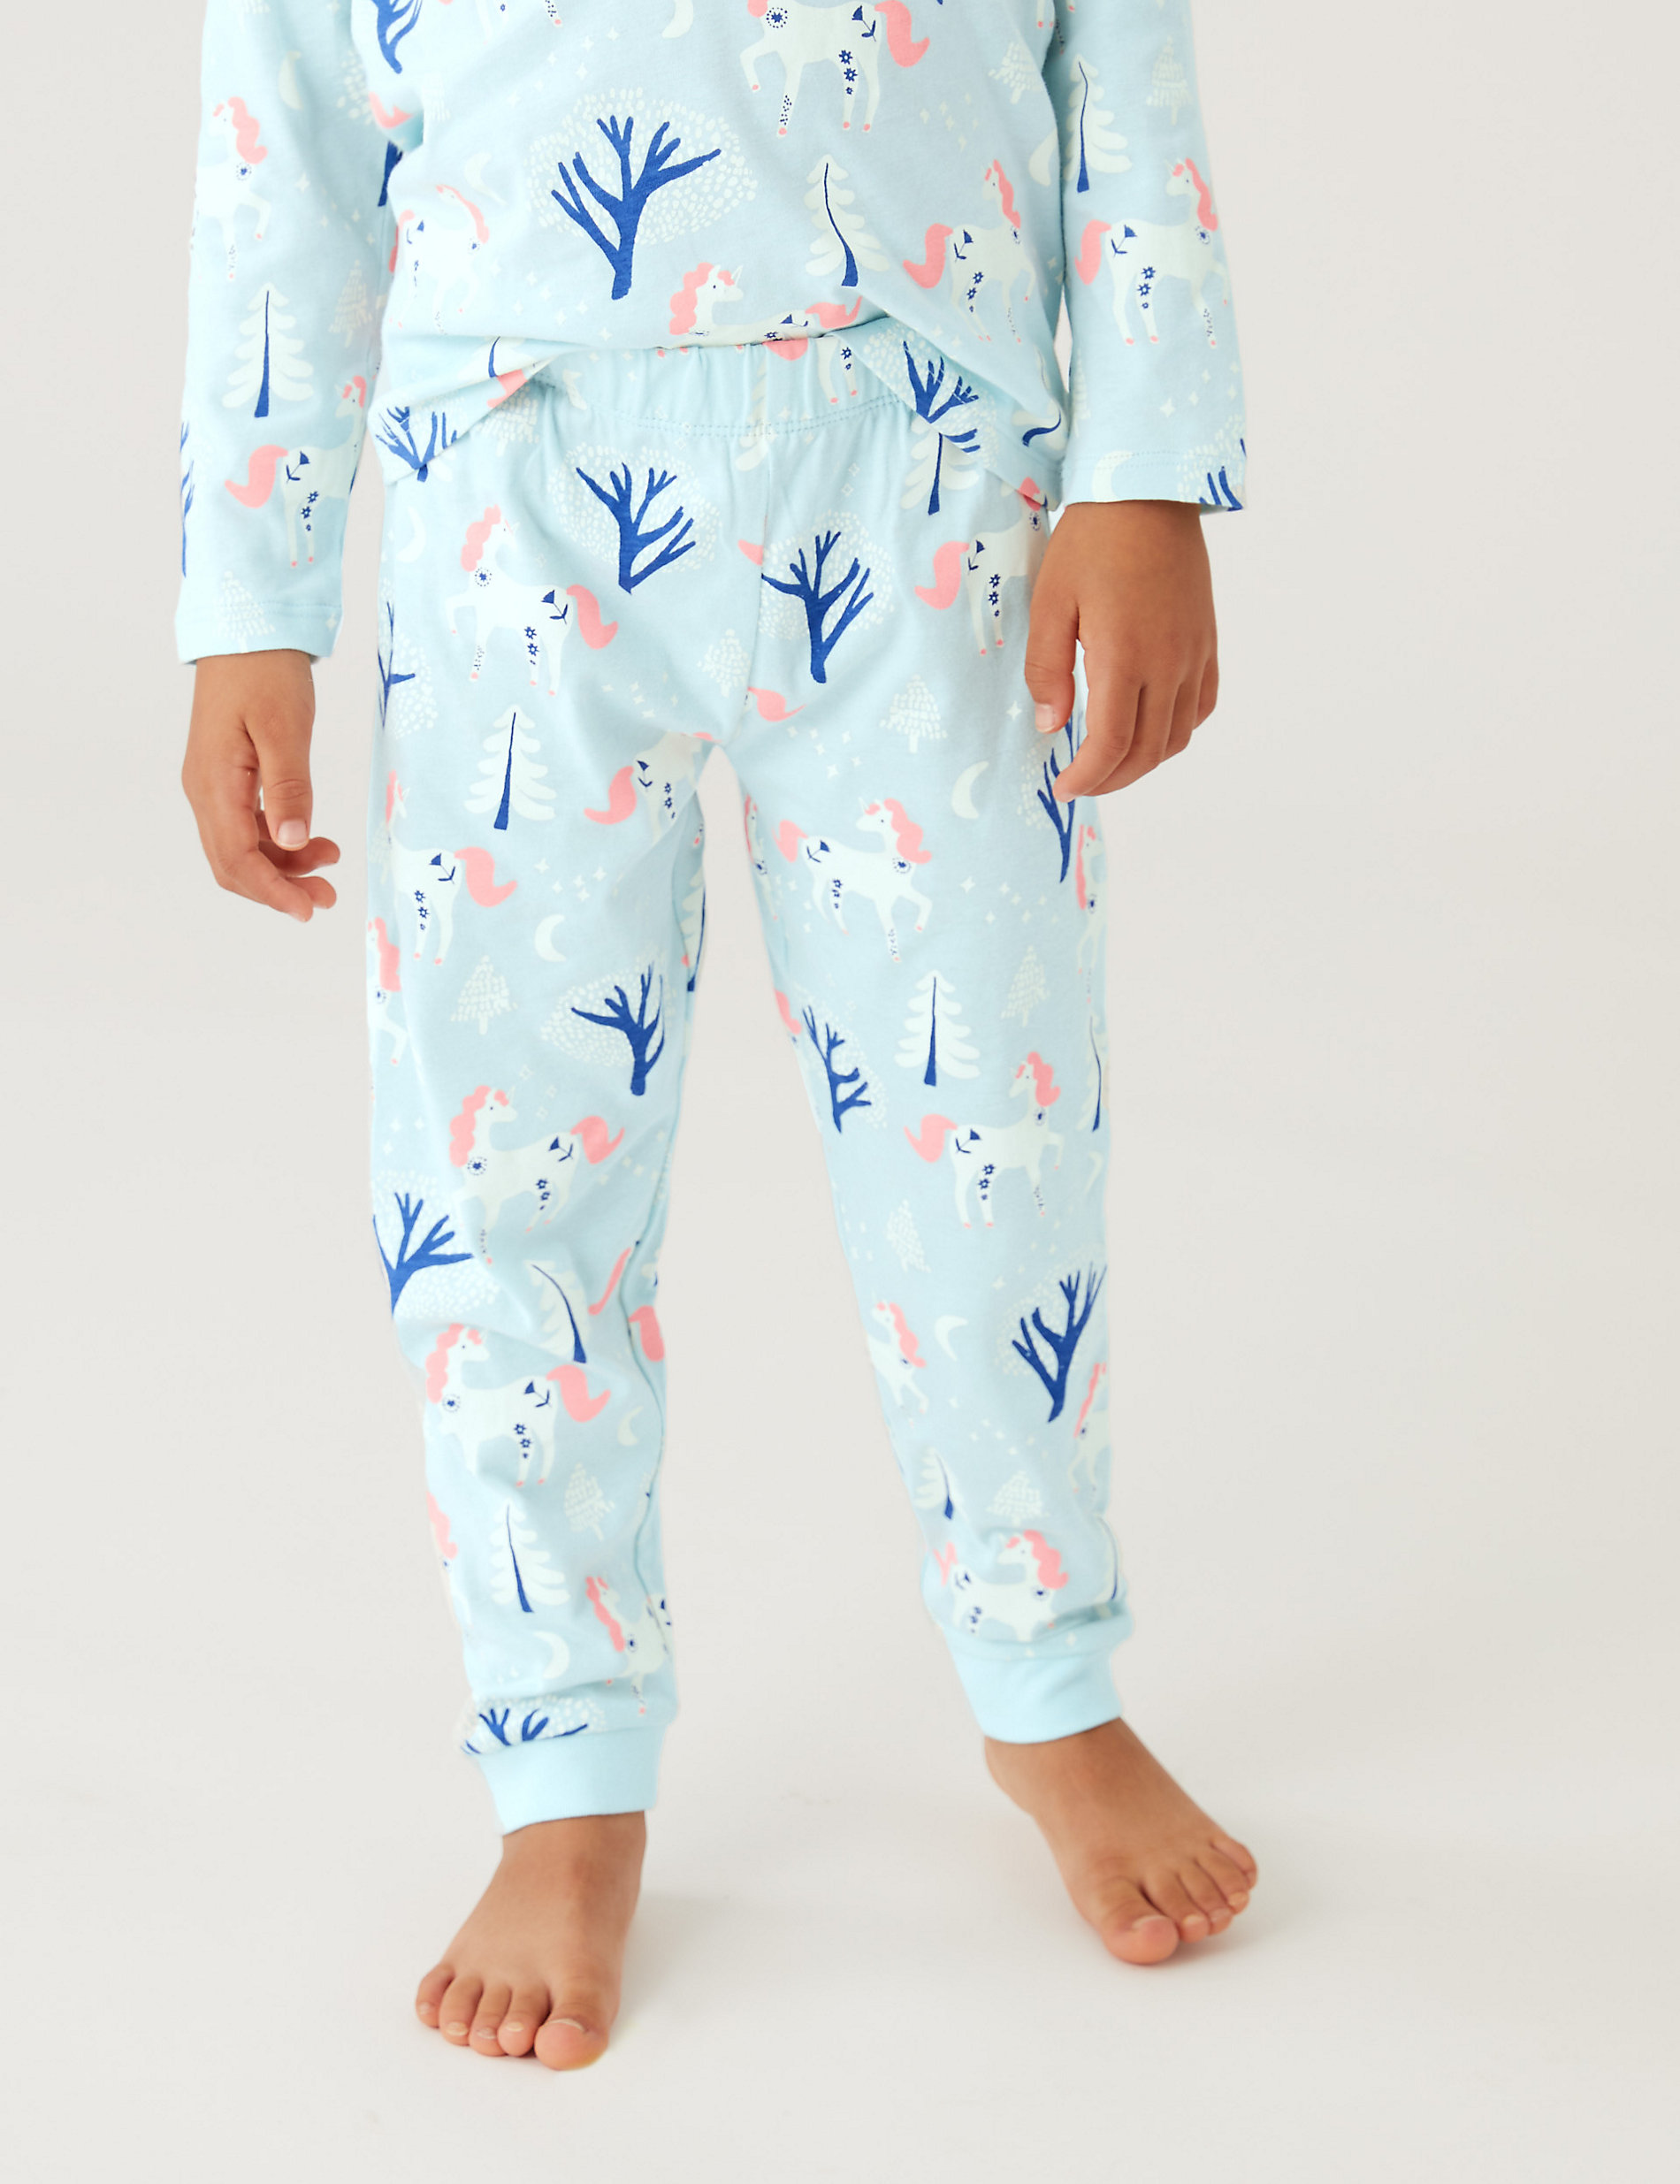 Πιτζάμες με print μονόκερω από 100% βαμβάκι (12 μηνών - 7 ετών)